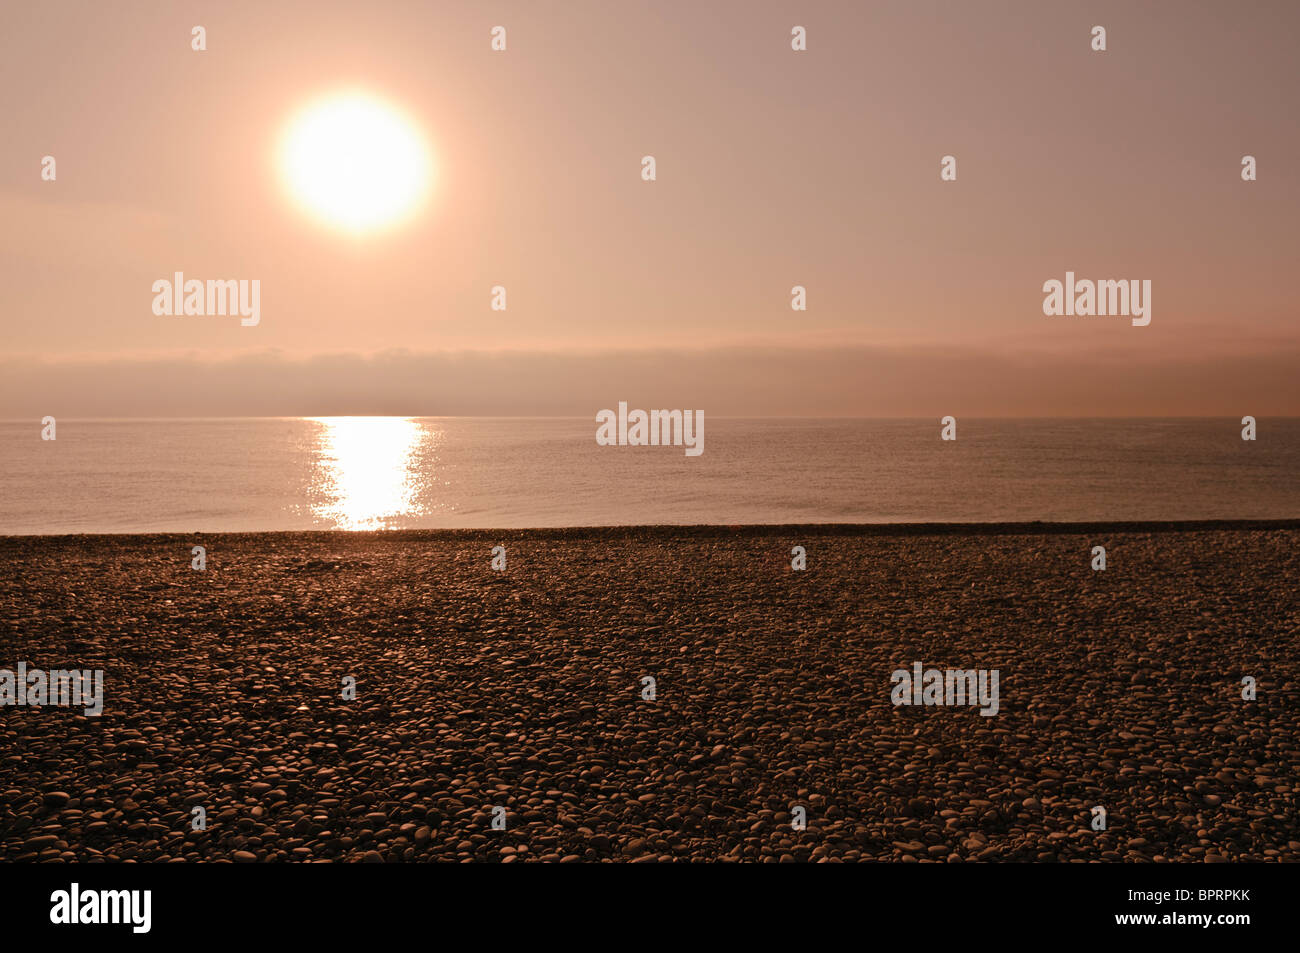 Sunrise over the sea and a pebble beach Stock Photo